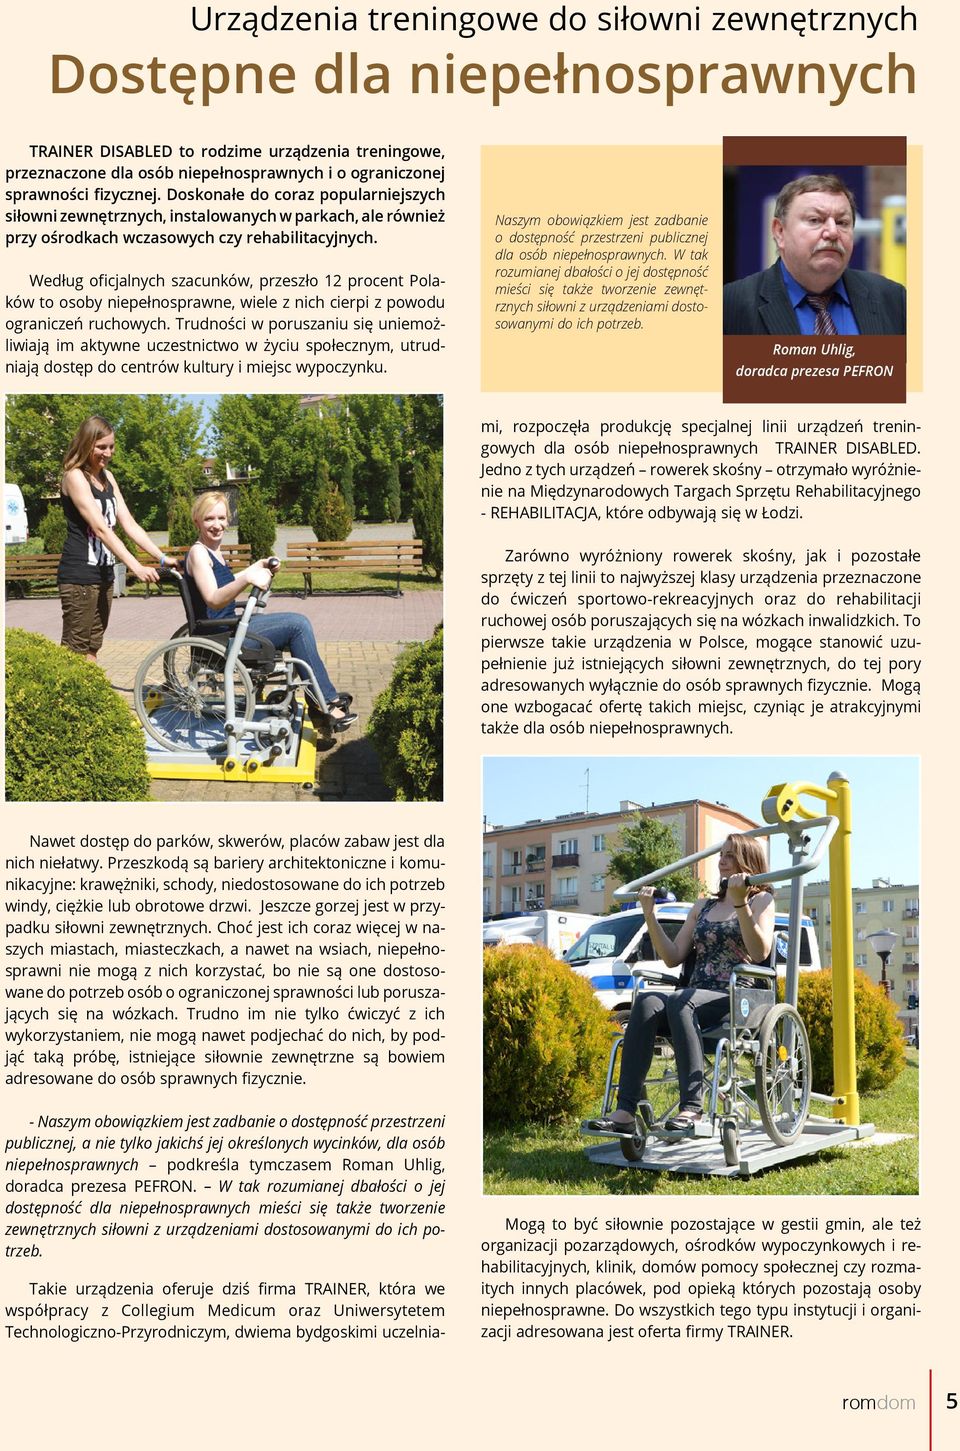 Według oficjalnych szacunków, przeszło 12 procent Polaków to osoby niepełnosprawne, wiele z nich cierpi z powodu ograniczeń ruchowych.